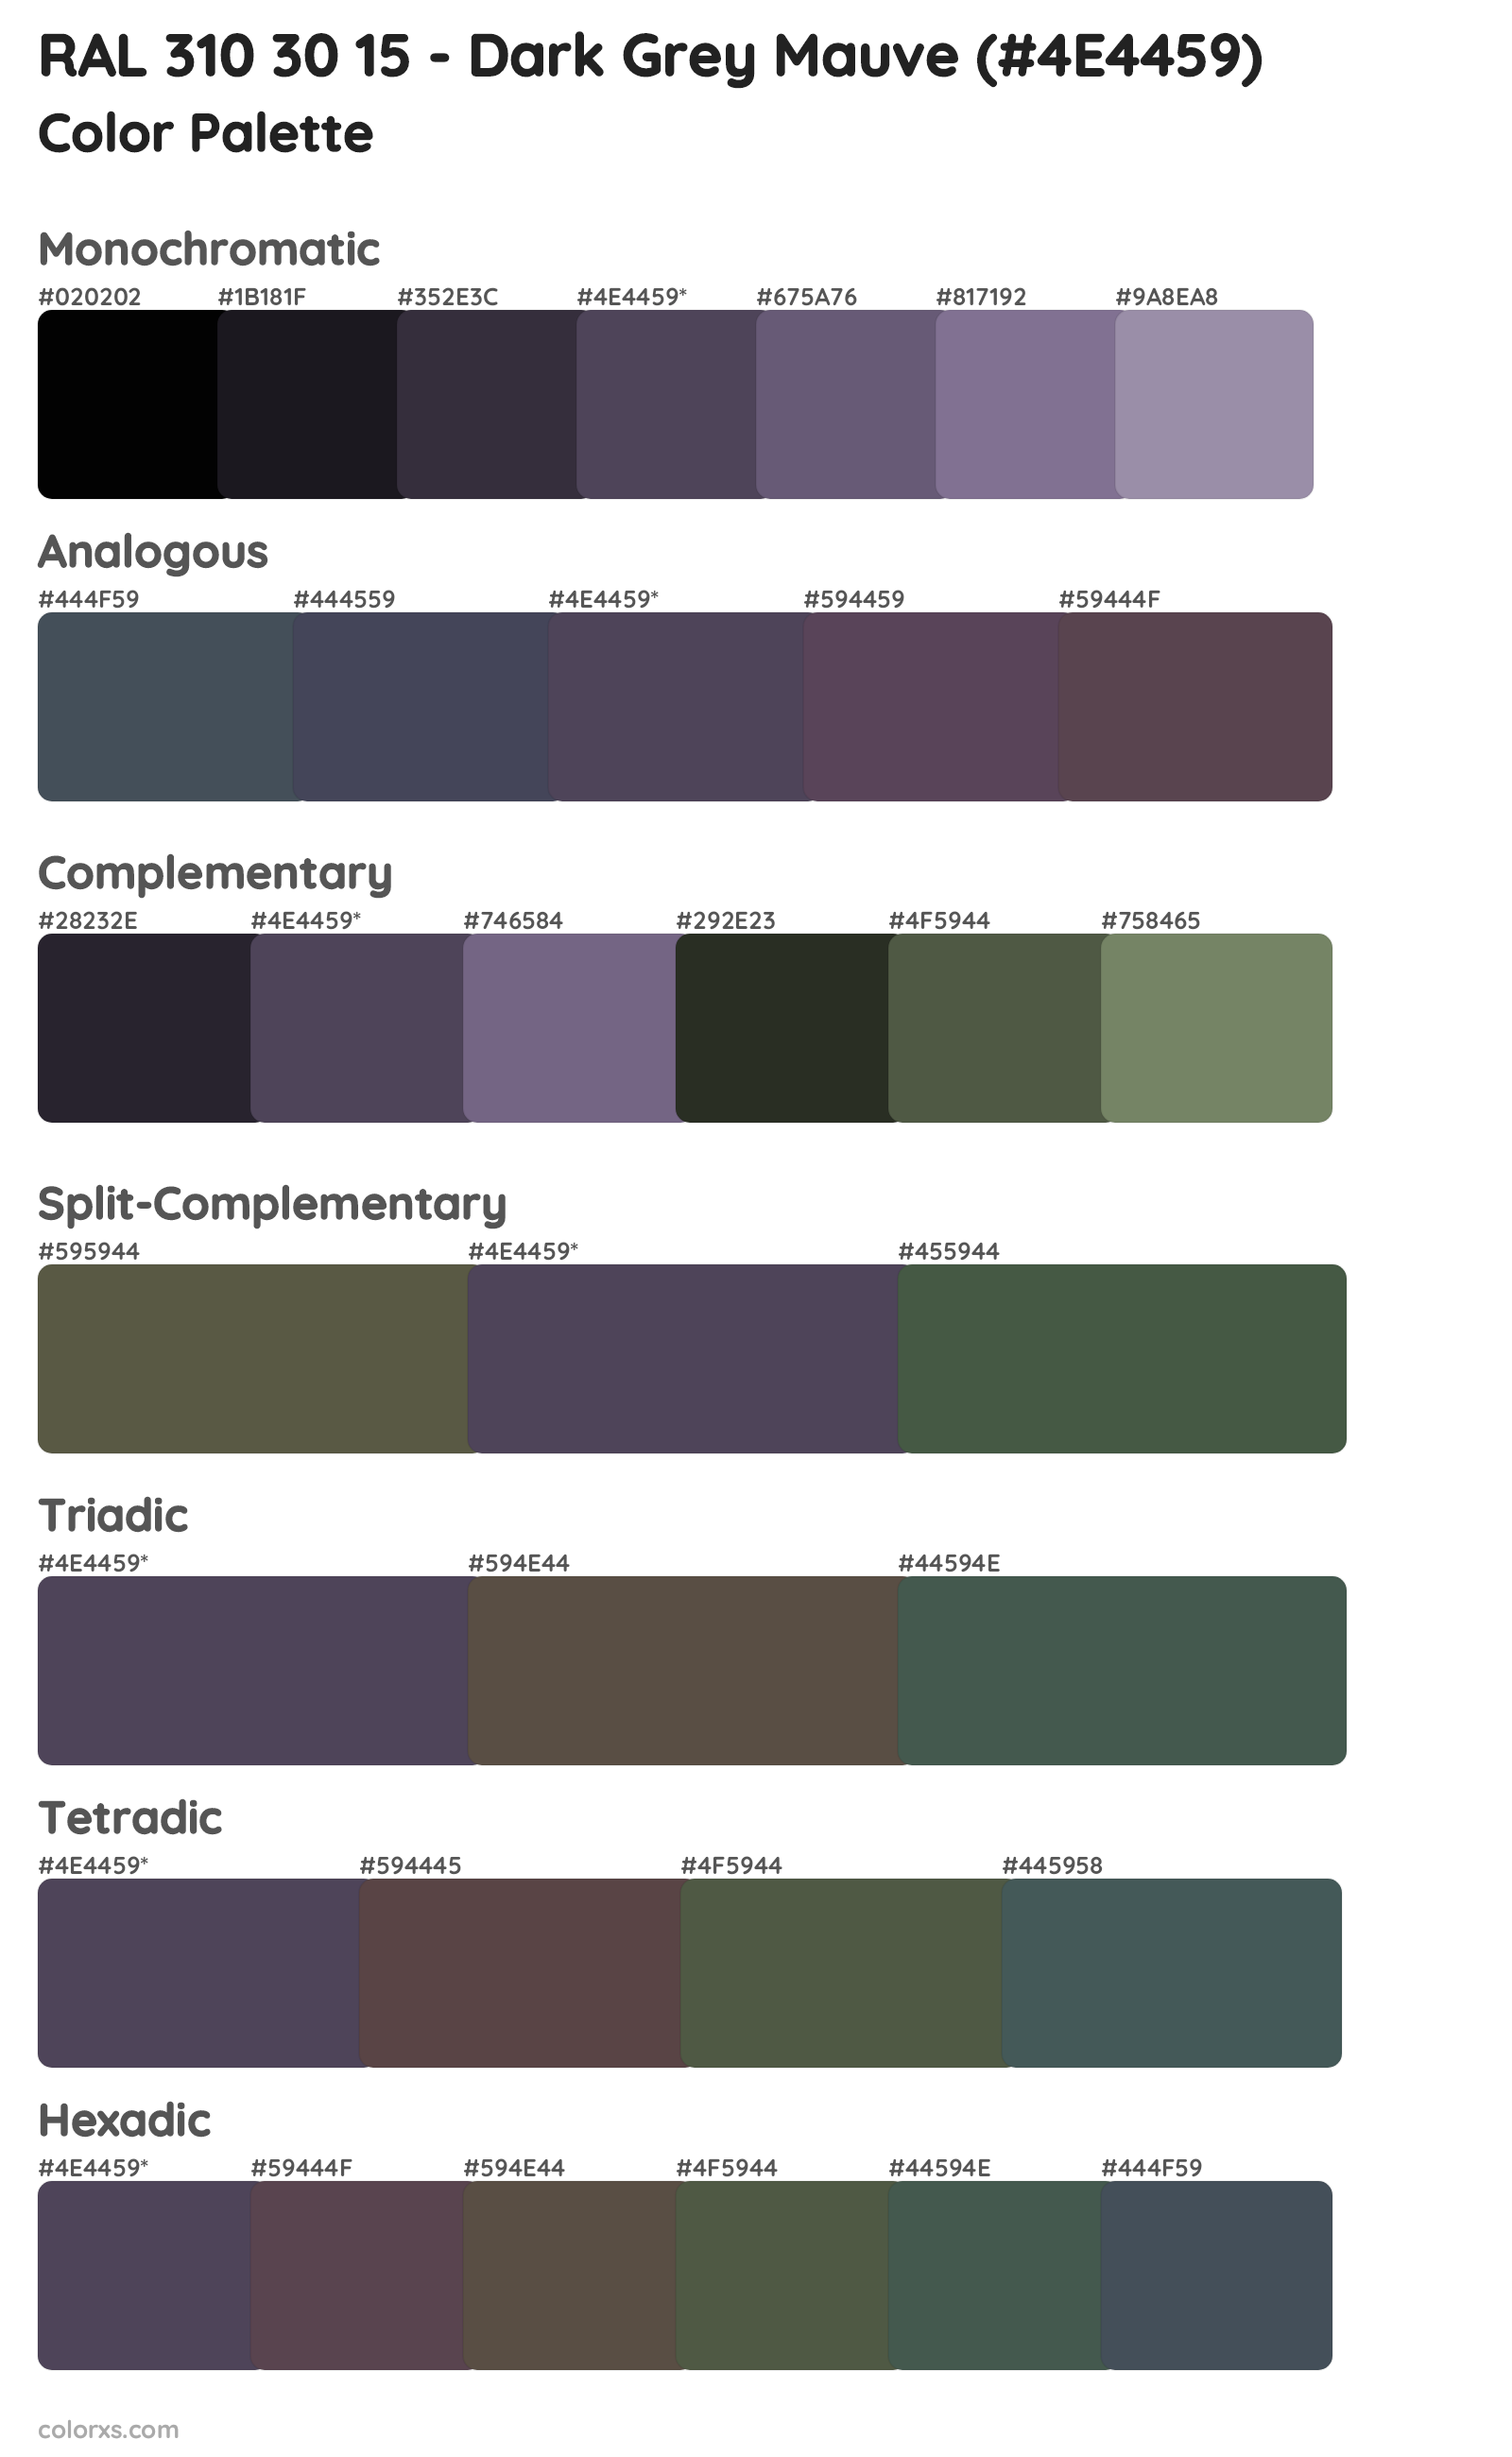 RAL 310 30 15 - Dark Grey Mauve Color Scheme Palettes